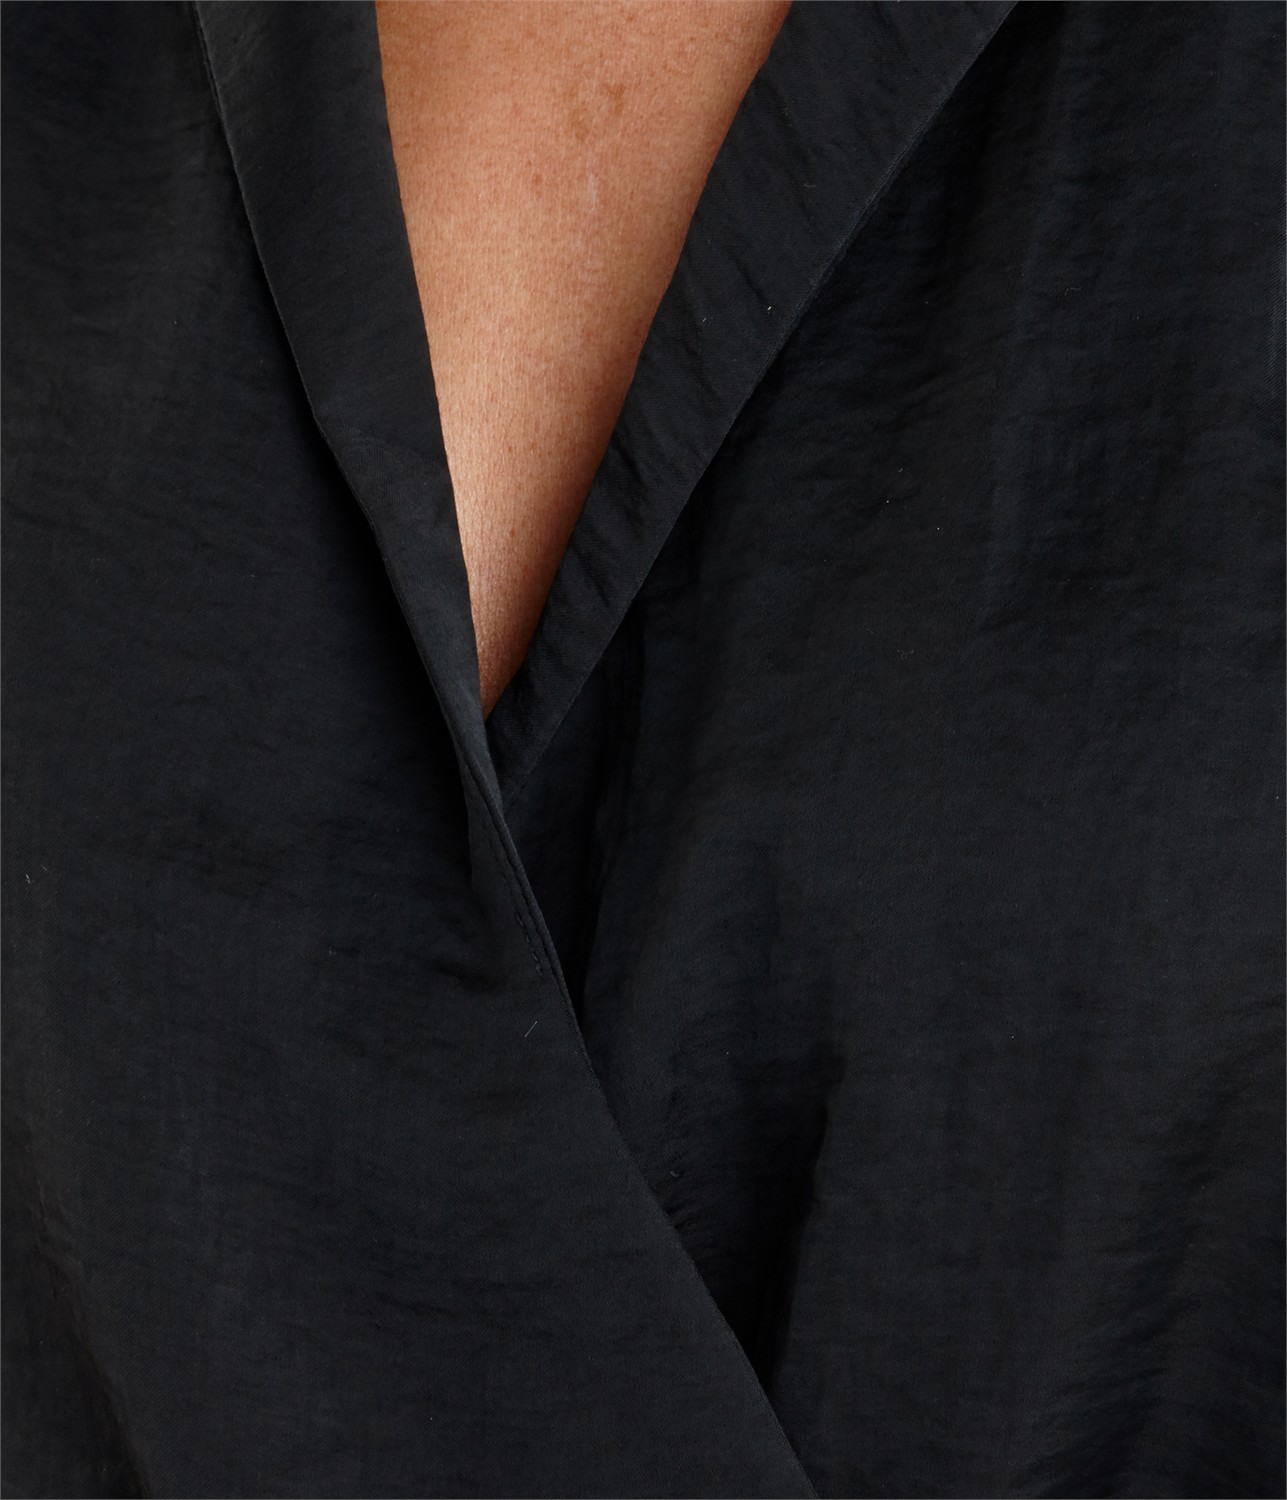 Camaieu fekete szatén nyári ruha 2014.6.9 fotója